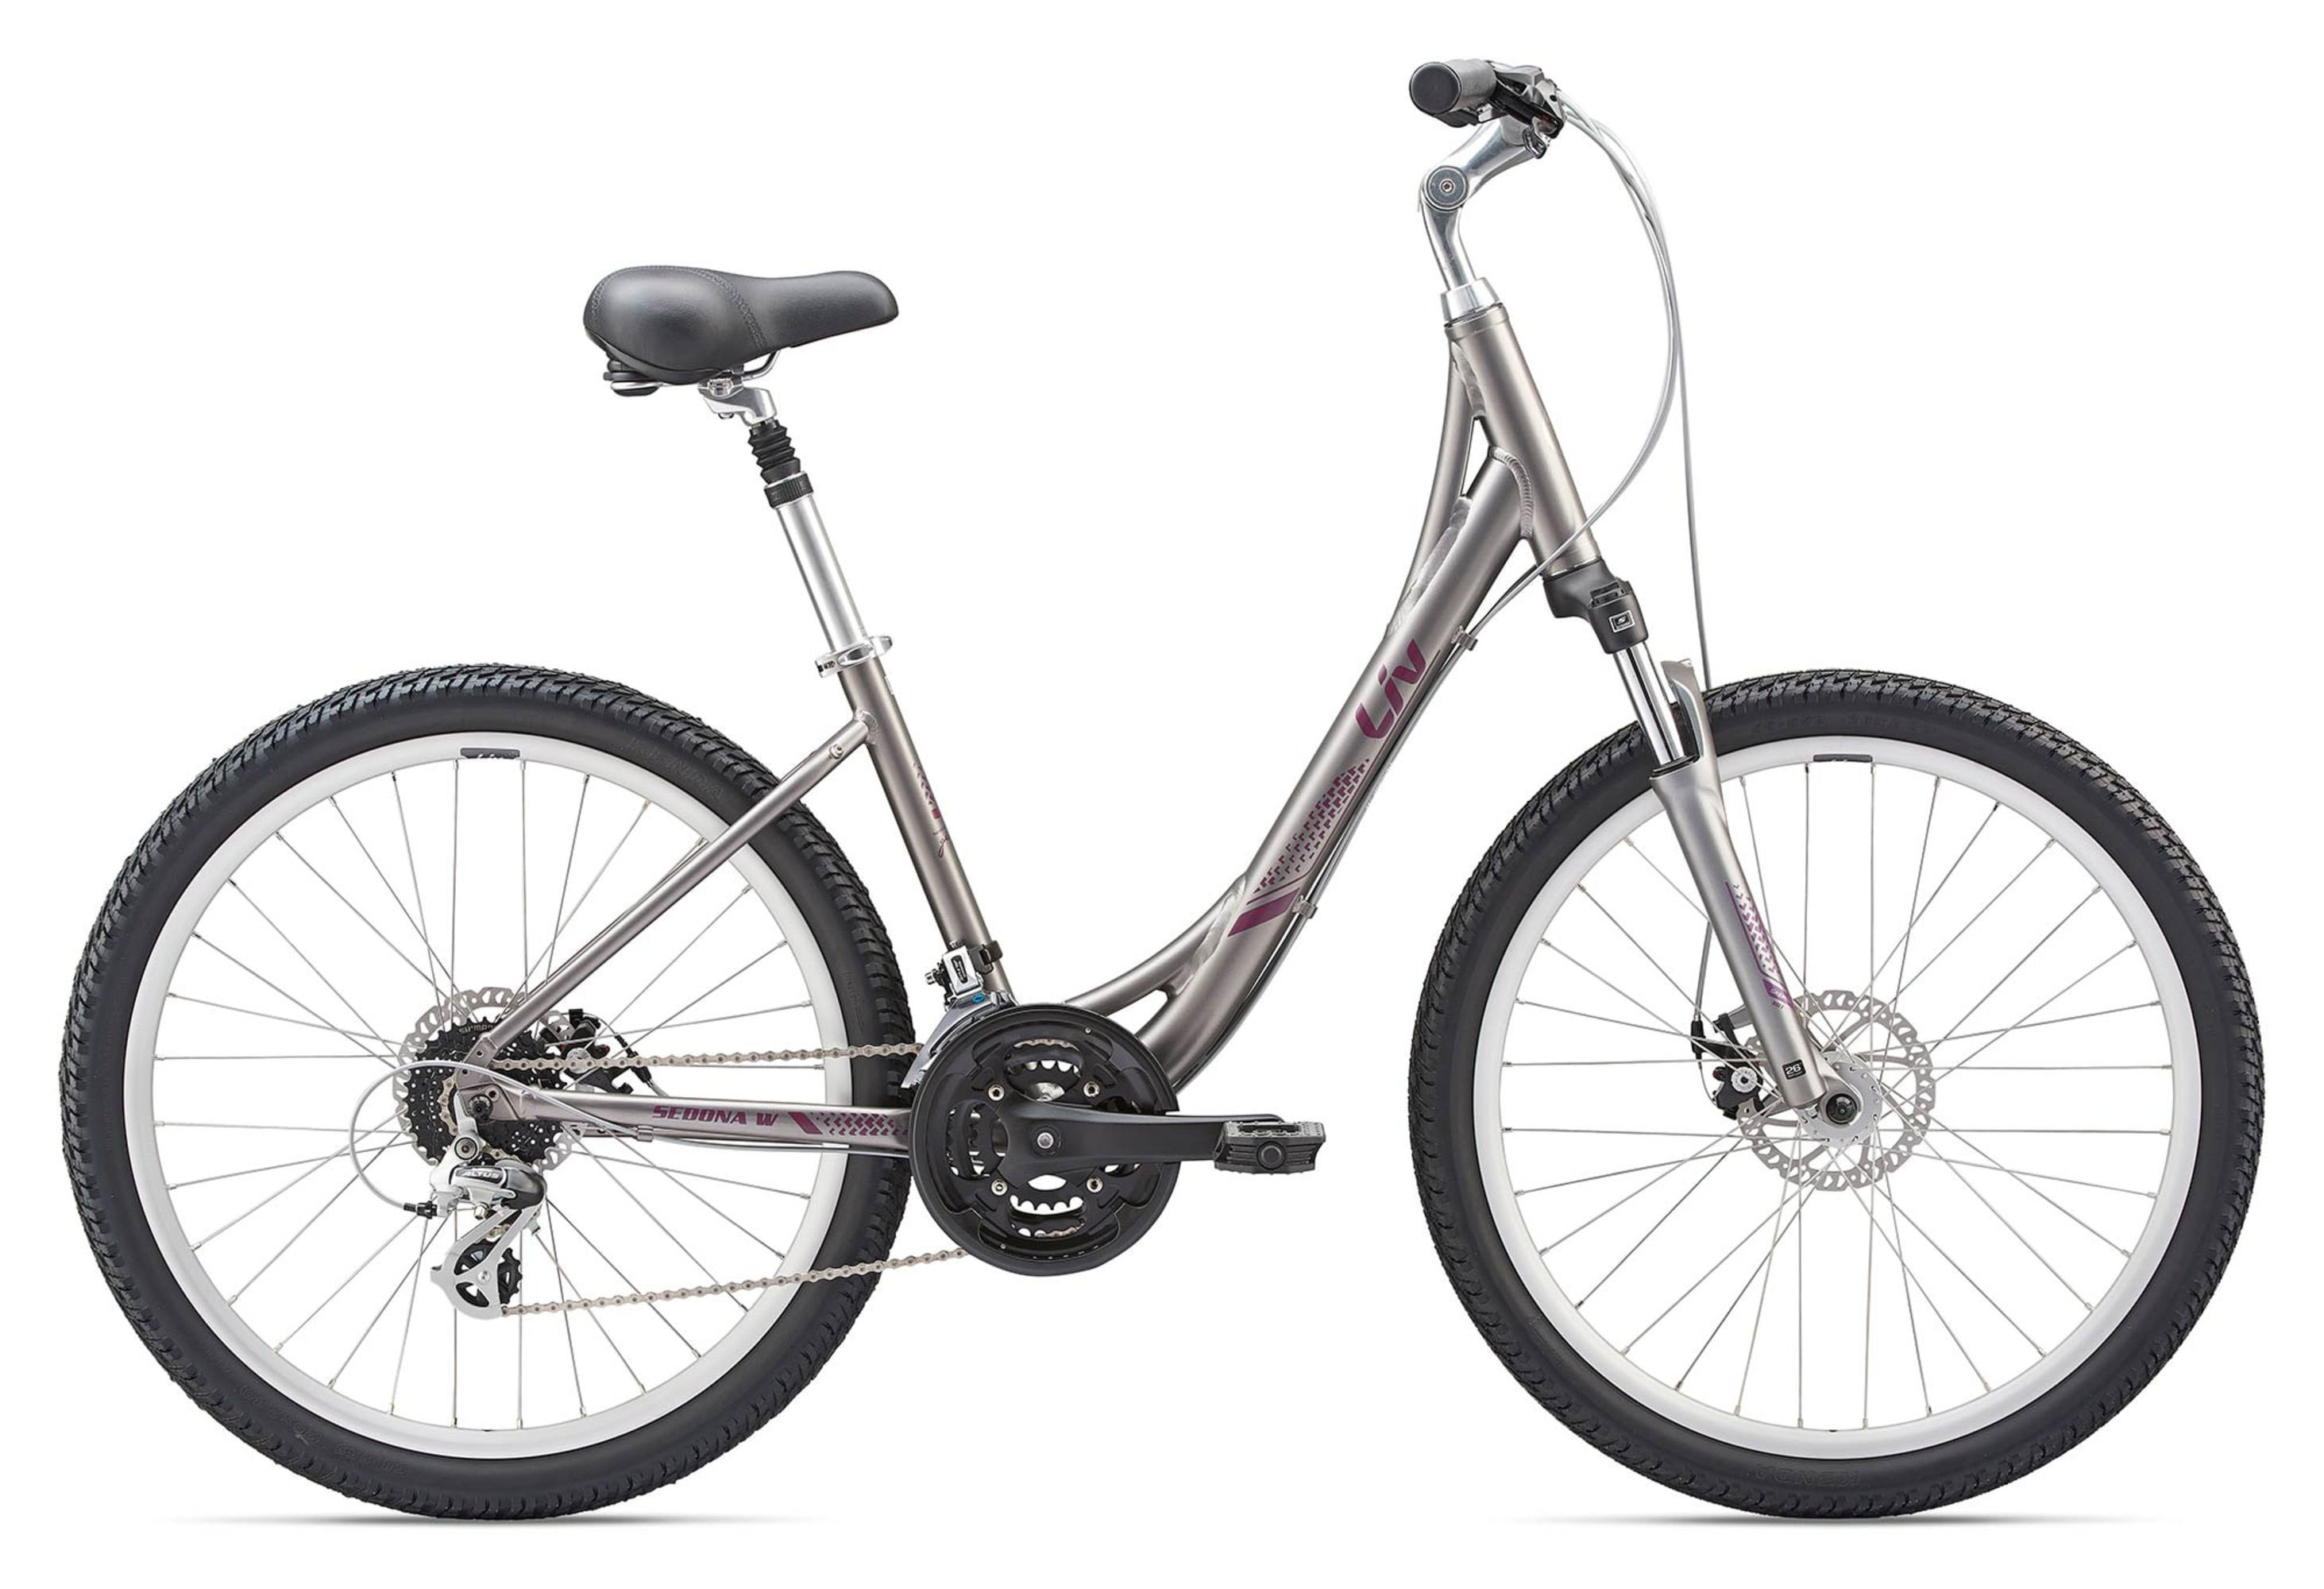  Отзывы о Женском велосипеде Giant Sedona DX W 2020